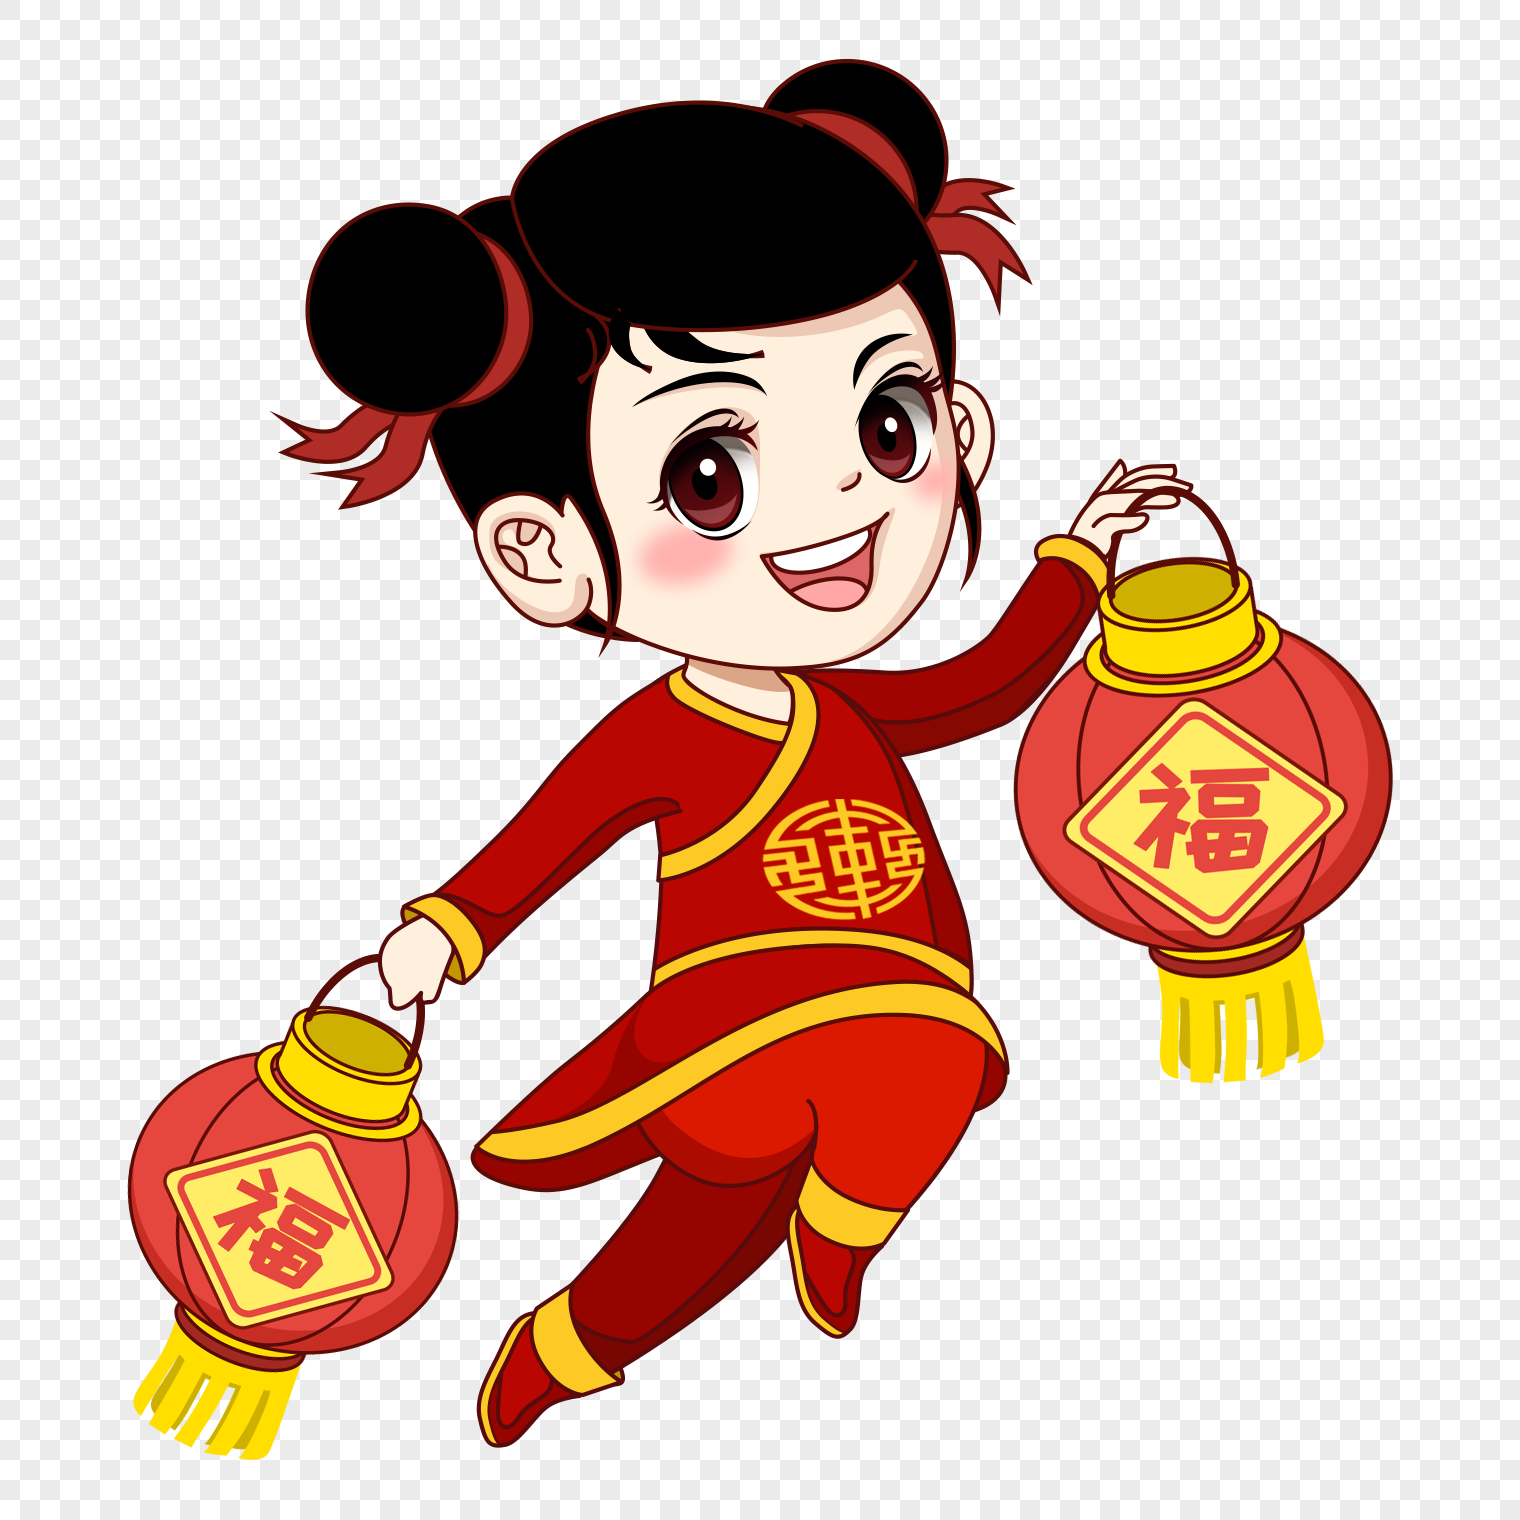 Fu Fu Wa carries lanterns., fu, children, wa png transparent background